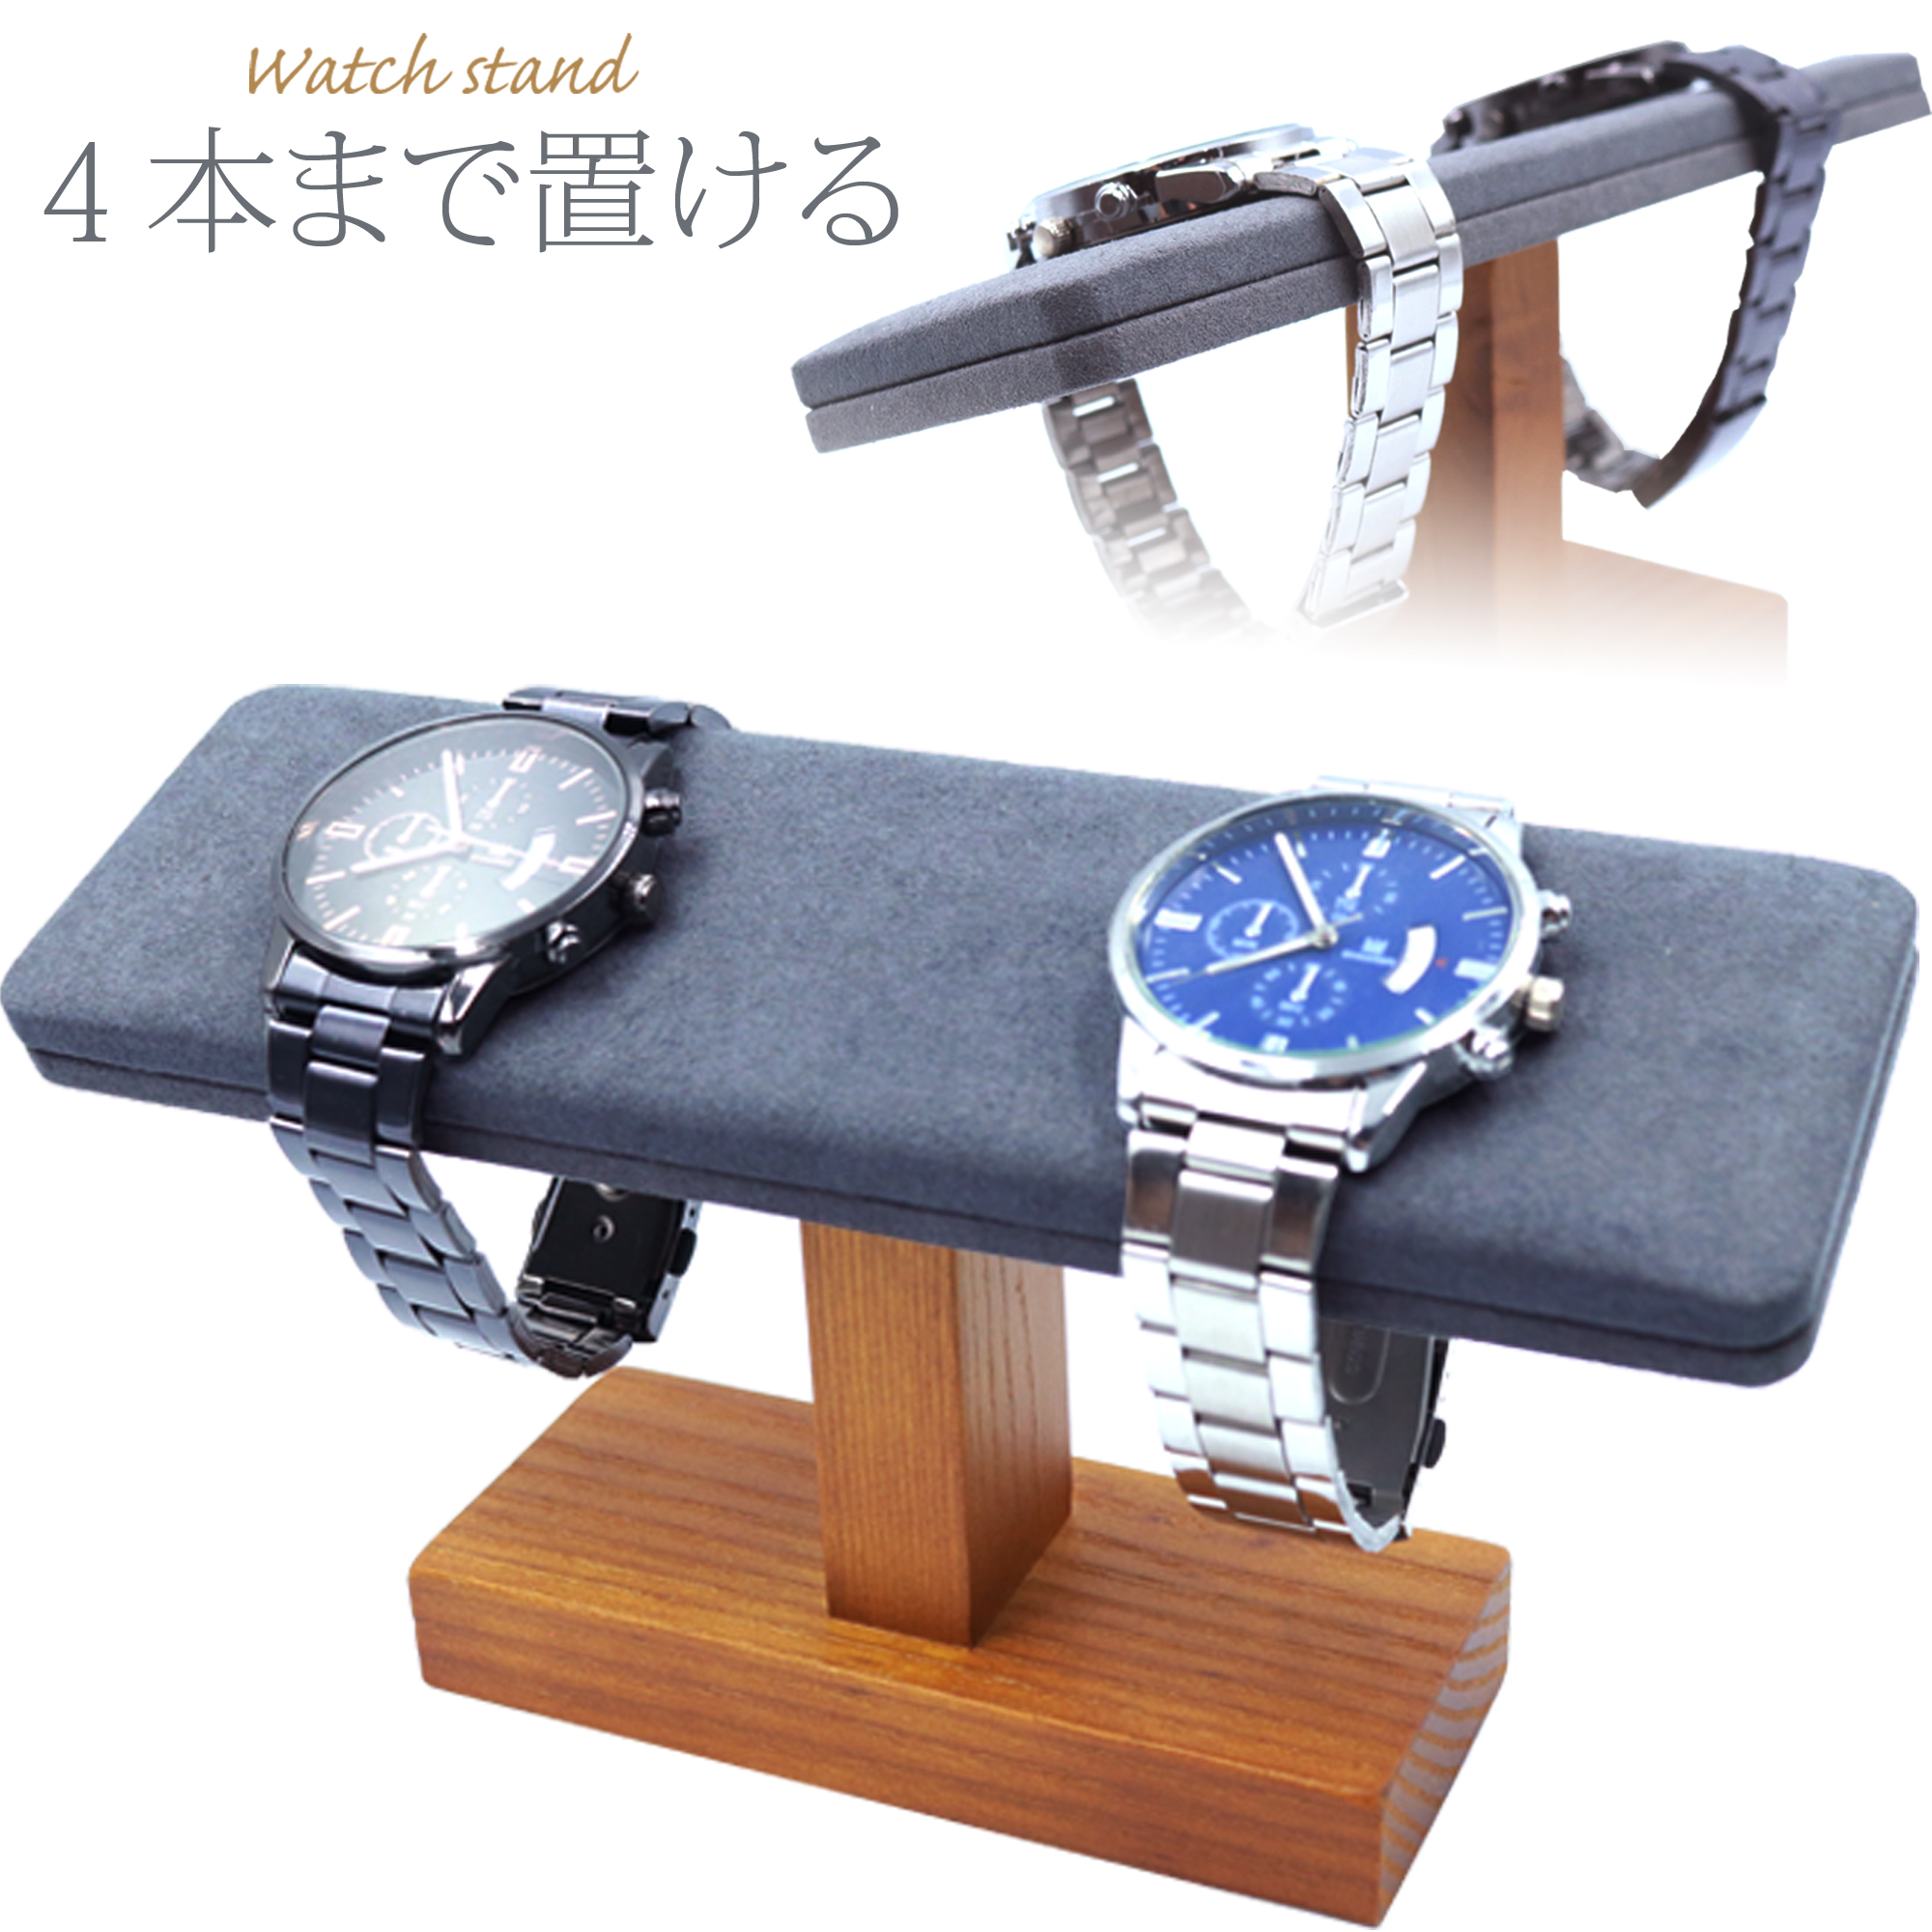 腕時計 スタンド 高級天然木 ウォッチスタンド 木製 時計スタンド 4本 時計 腕時計スタンド おしゃれ 木 高級 2本 3本 たくさん ディスプレイ CHURACY 送料無料